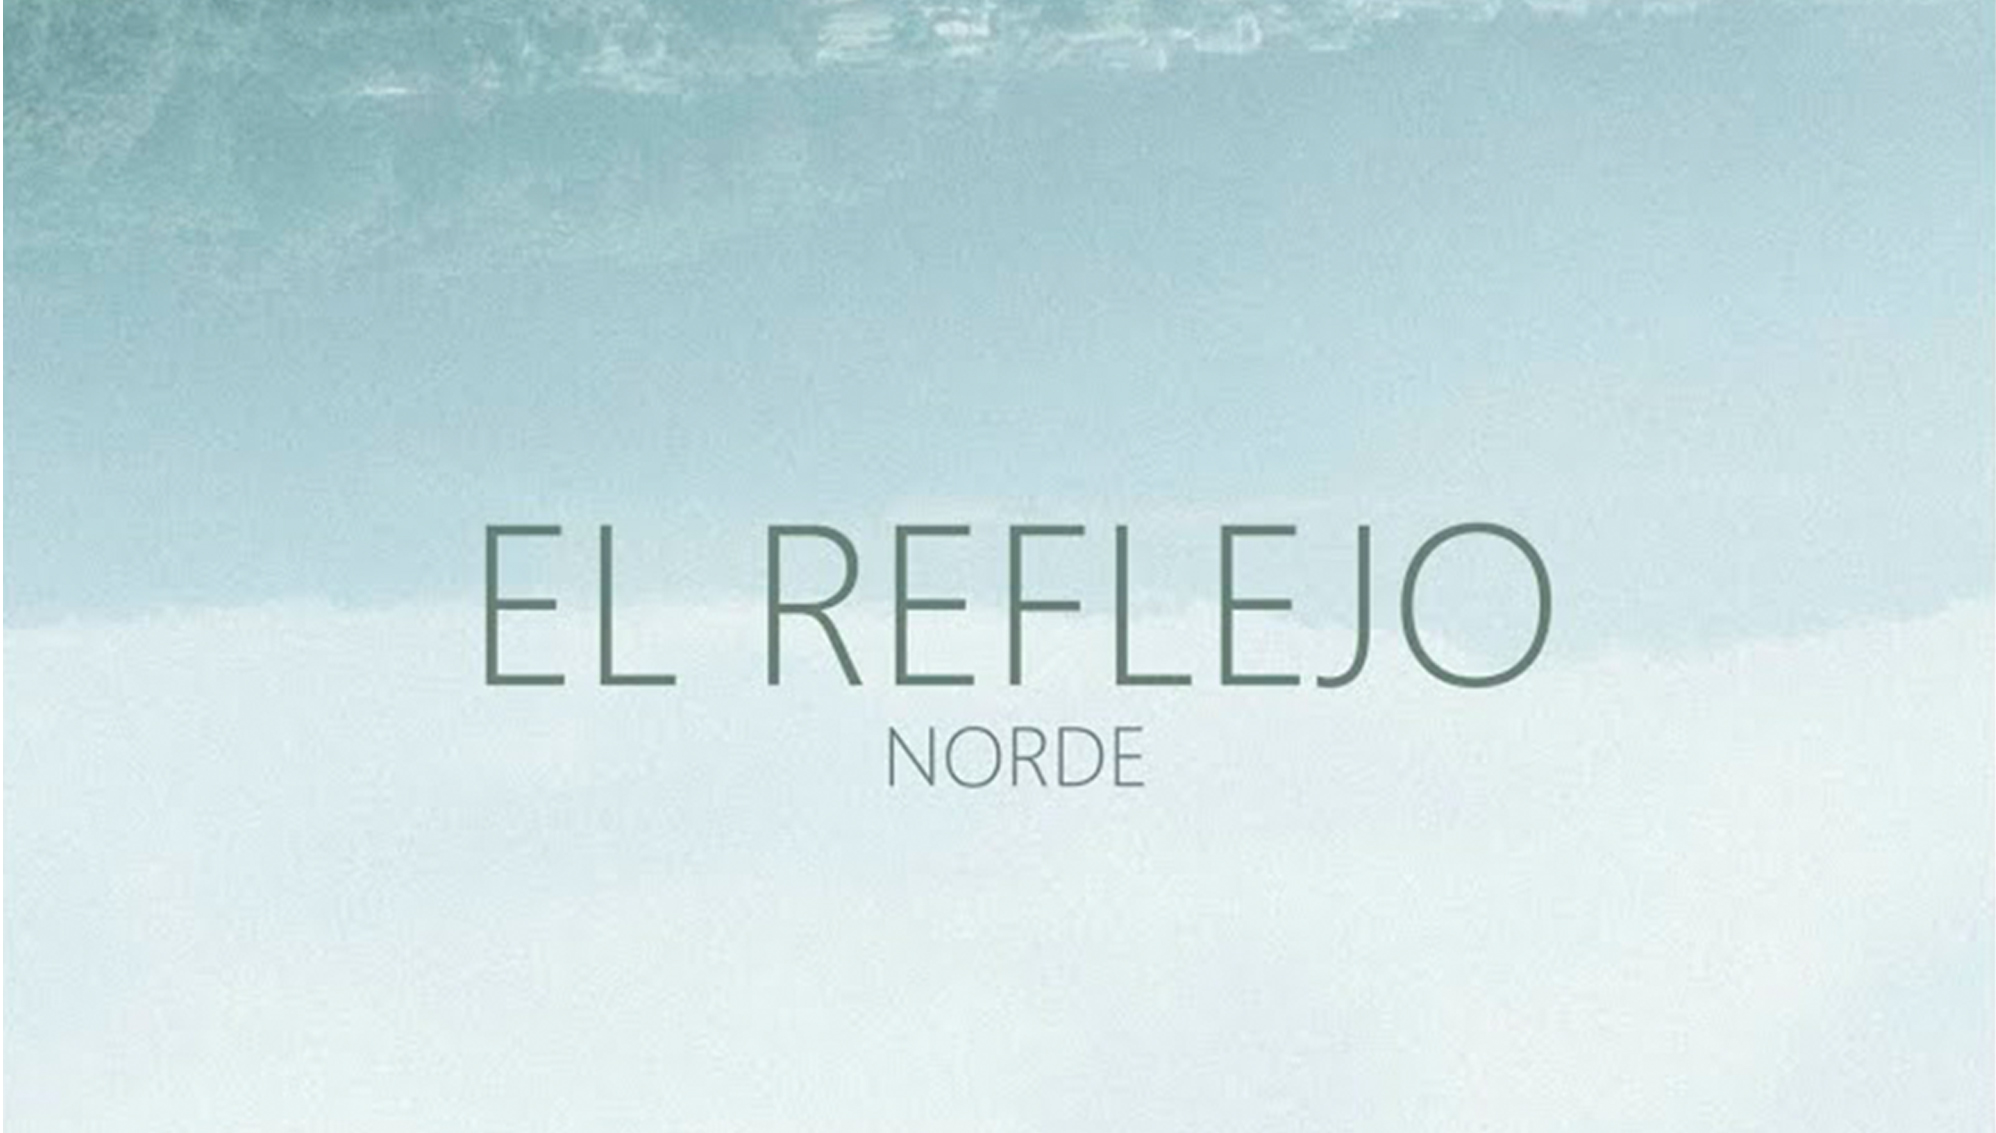 Norde lanza El reflejo